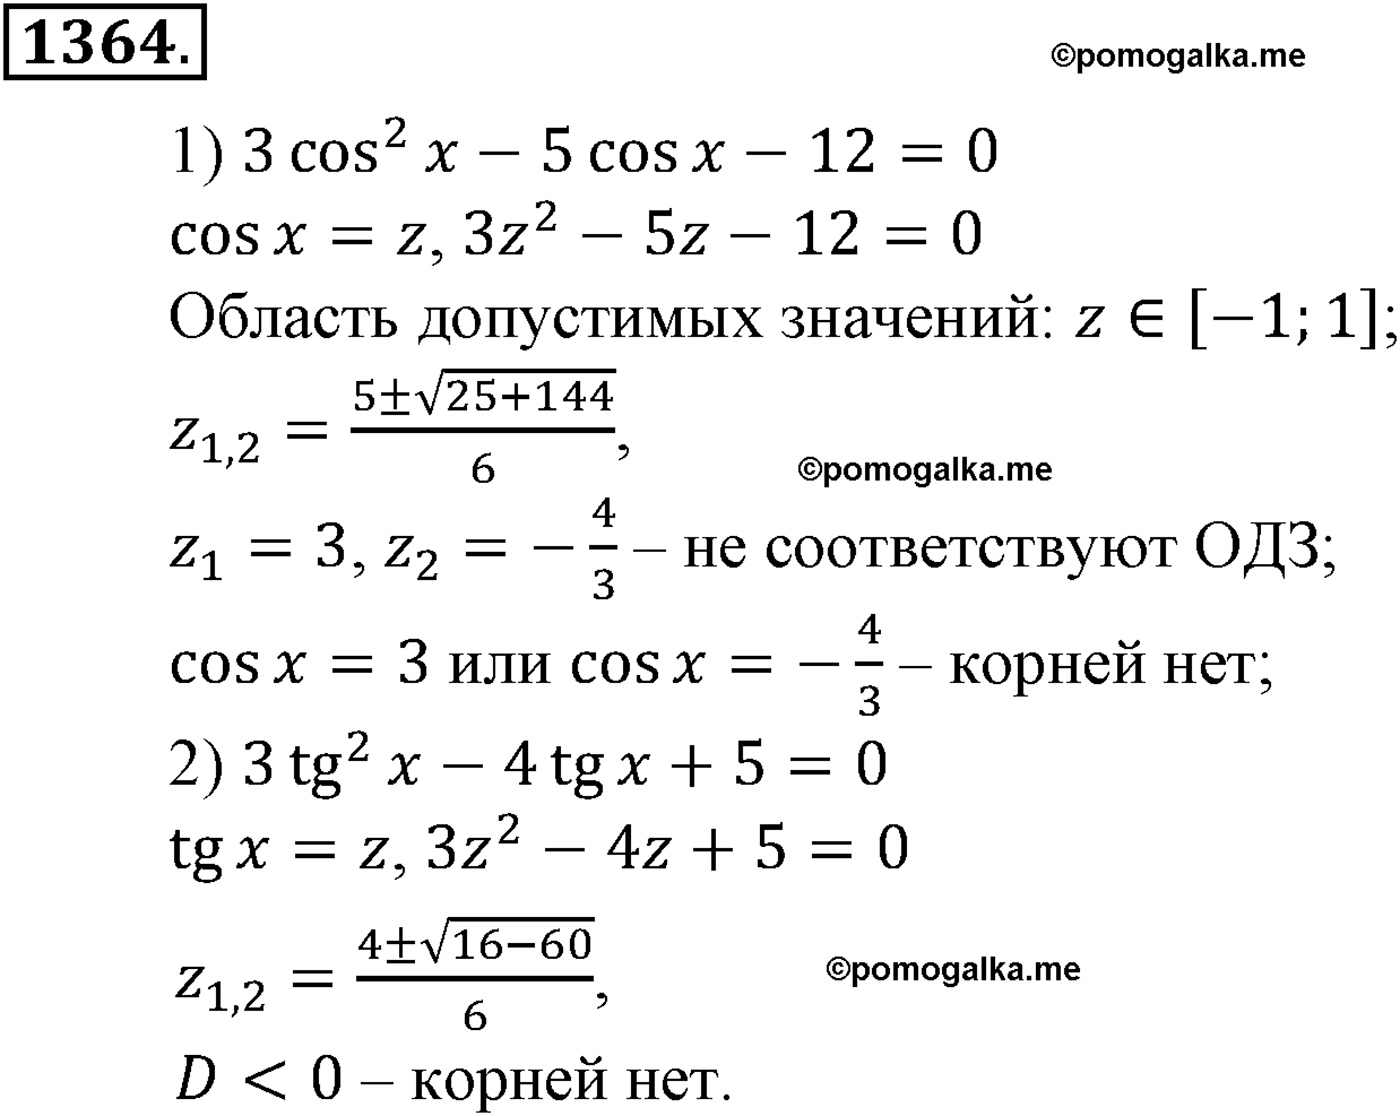 разбор задачи №1364 по алгебре за 10-11 класс из учебника Алимова, Колягина